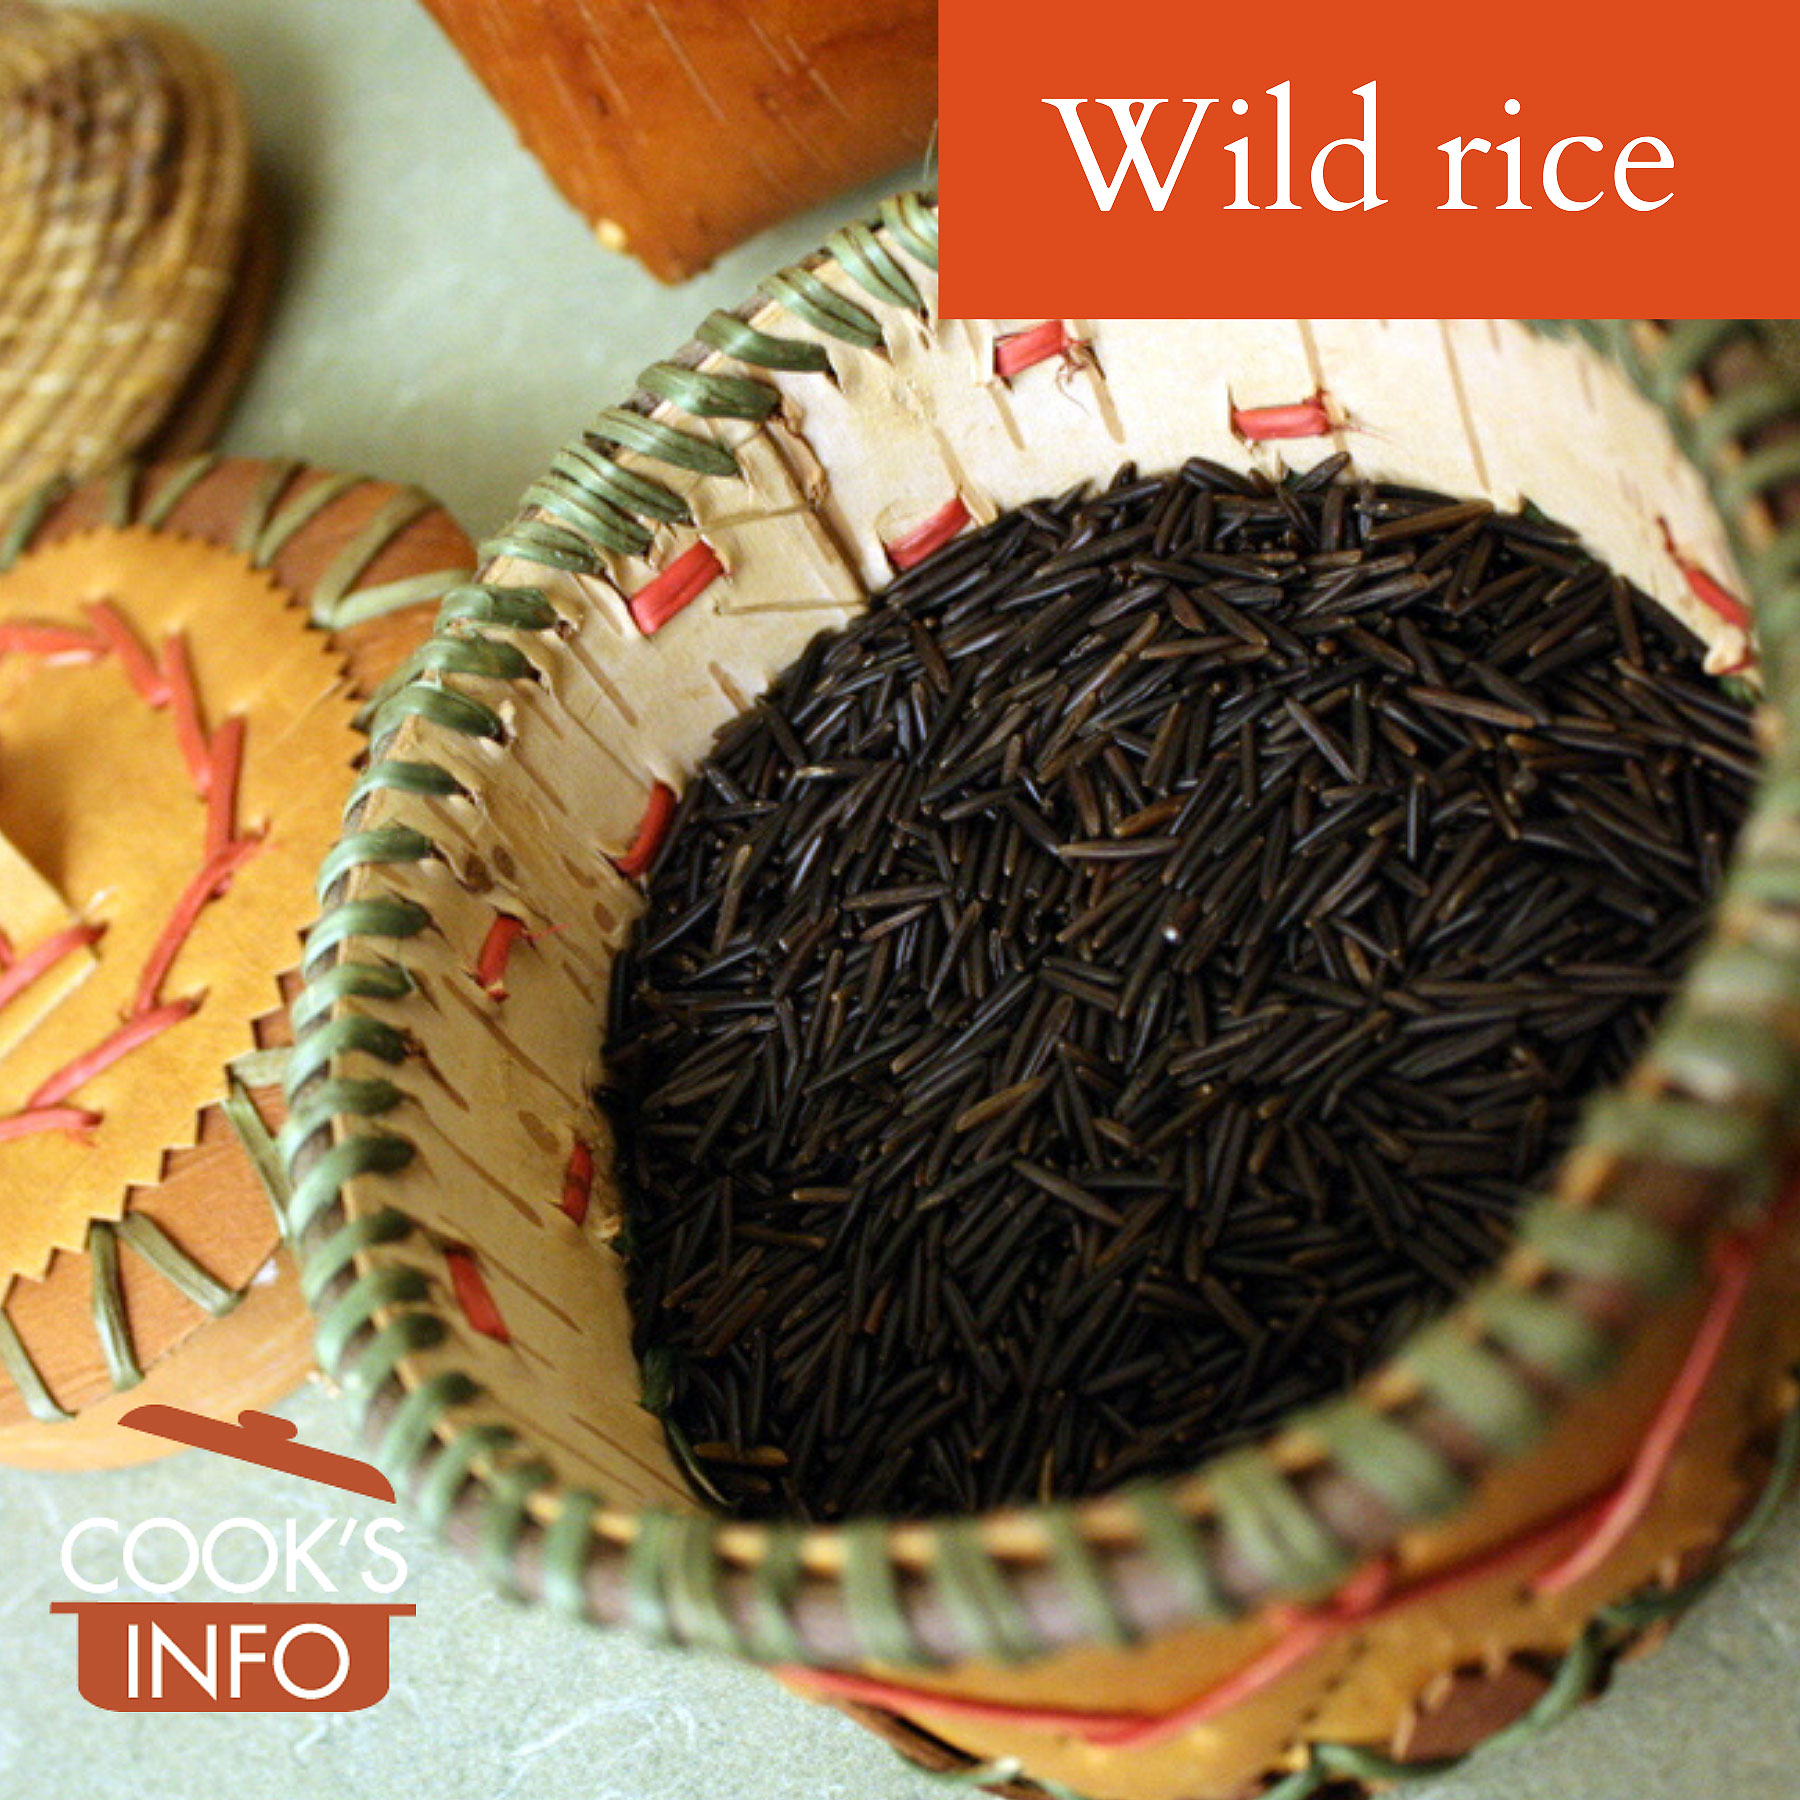 Wild rice in basket